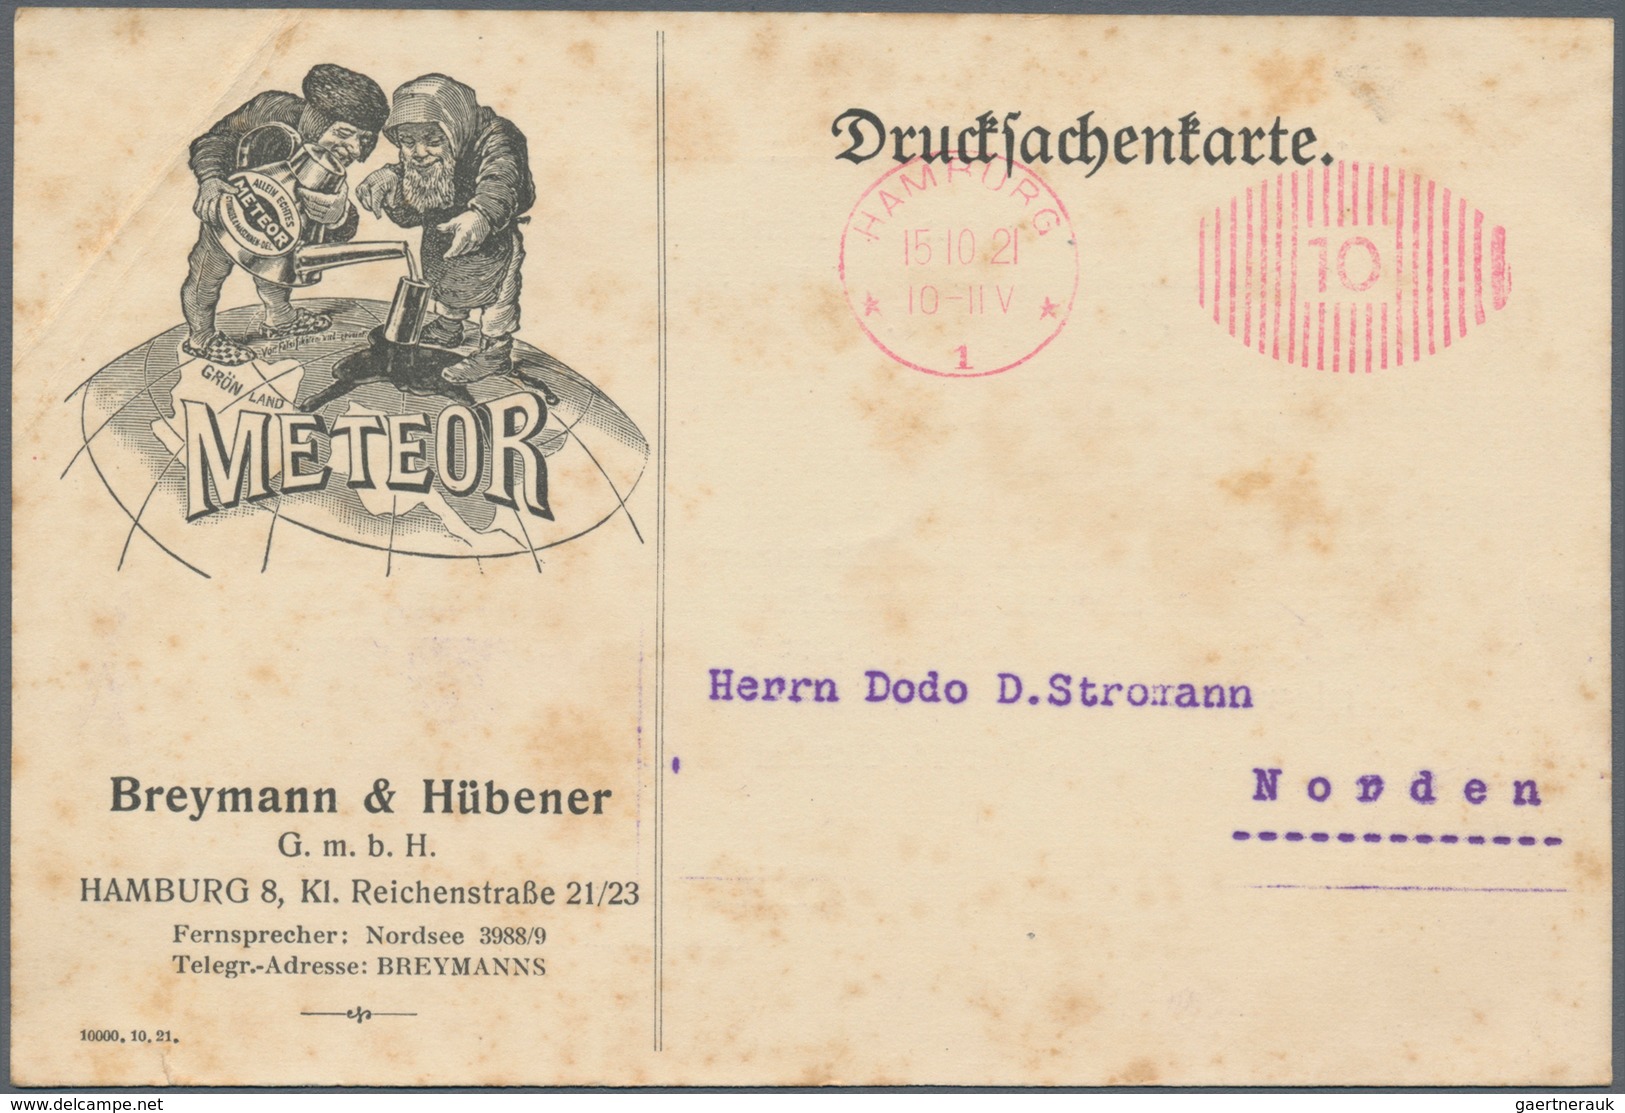 Deutsches Reich - Inflation: 1921-1923, Freistempel, sortenreiche Partie mit geschätzt über 500 Bele